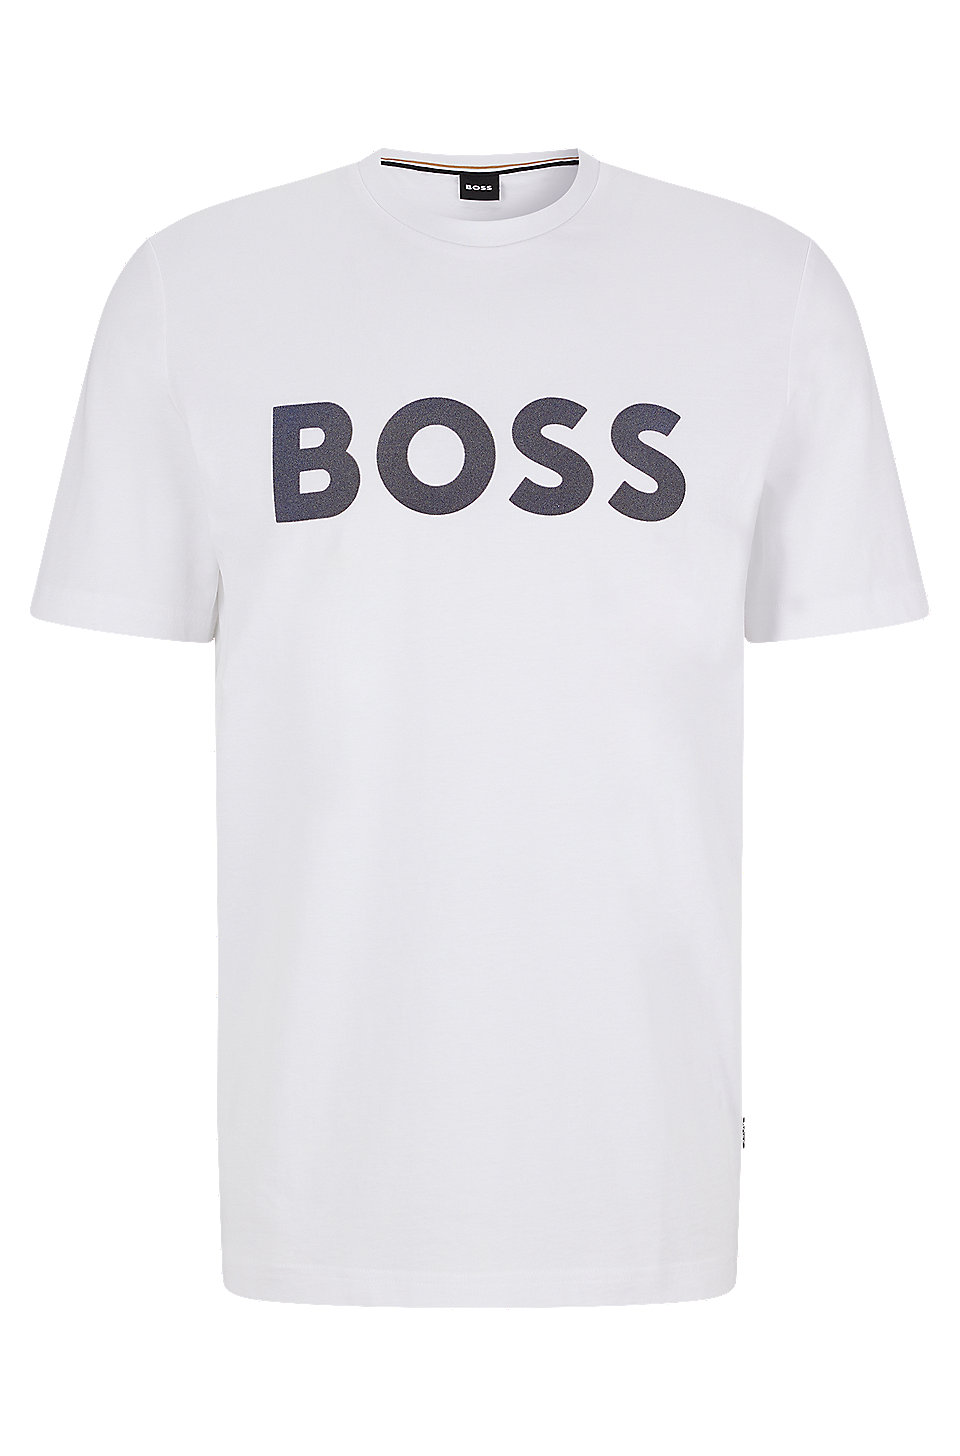 BOSS - Flock-print logo T-shirt in cotton jersey